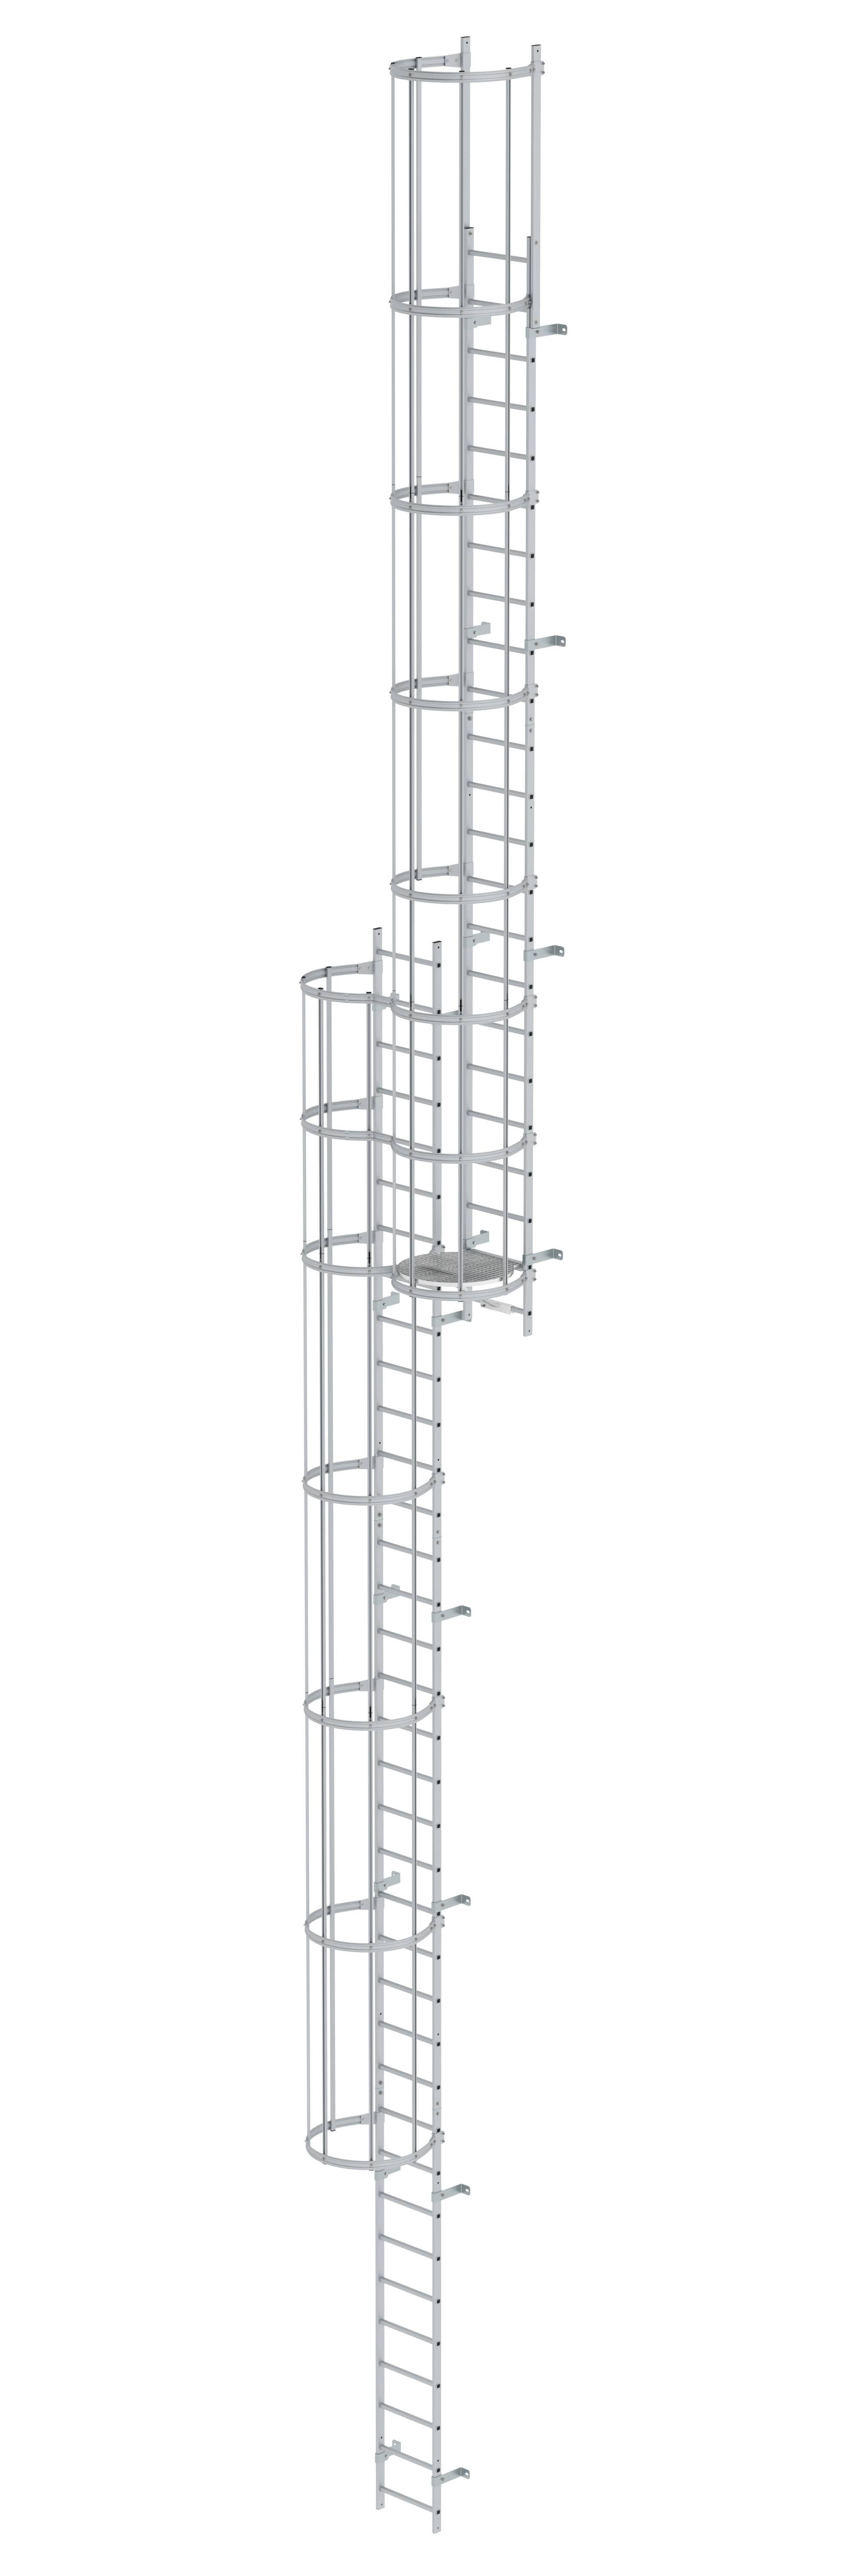 MUNK Mehrzügige Steigleiter mit Rückenschutz (Bau) Aluminium eloxiert  